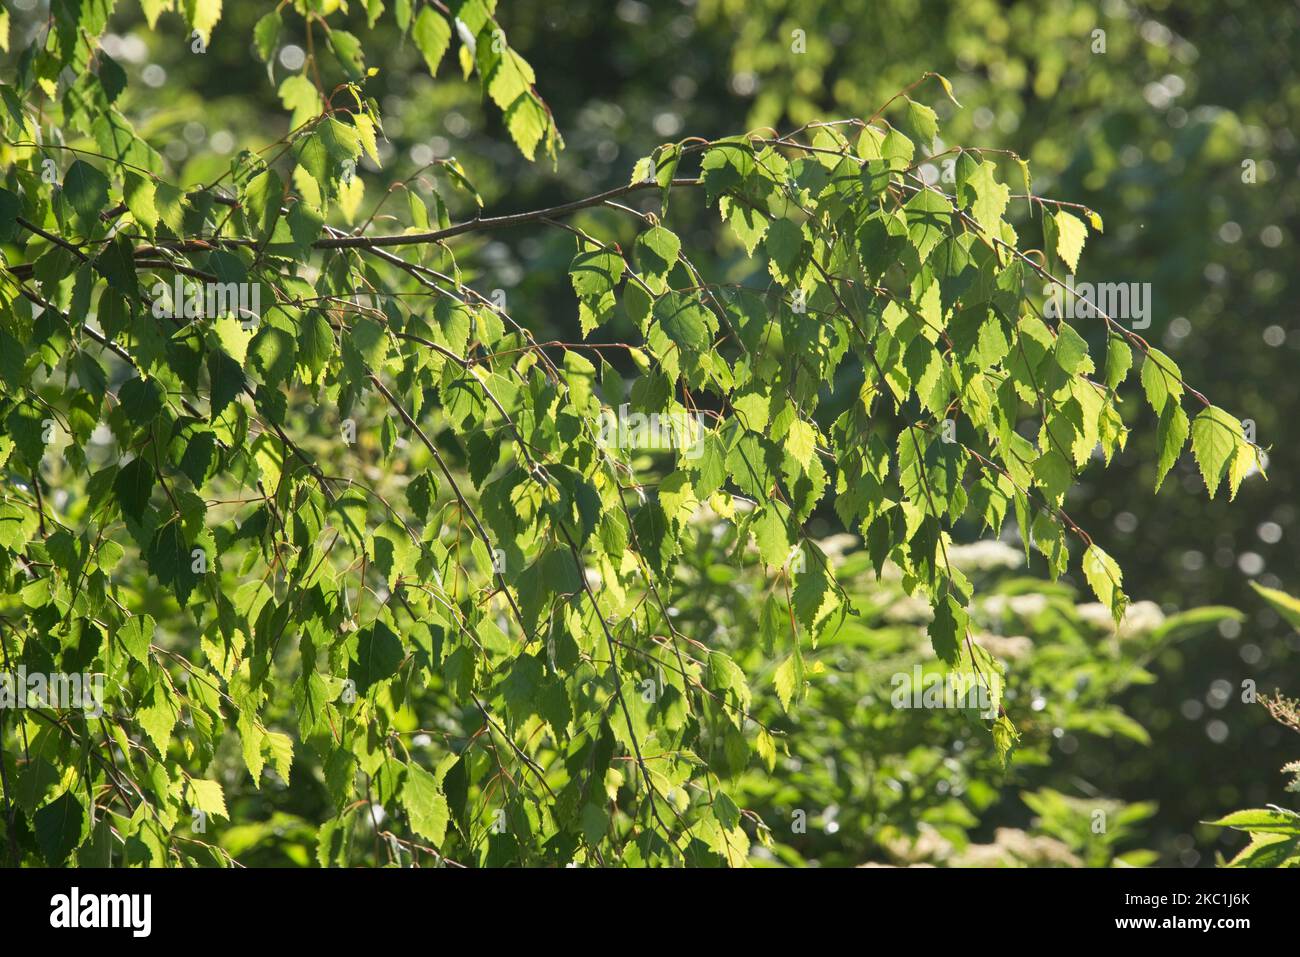 Luz del sol a través de la espalda alumbró hojas triangulares jóvenes de abedul plateado (Betula pendula) en un árbol de bosque caducifolio a principios del verano, Berkshire, junio Foto de stock